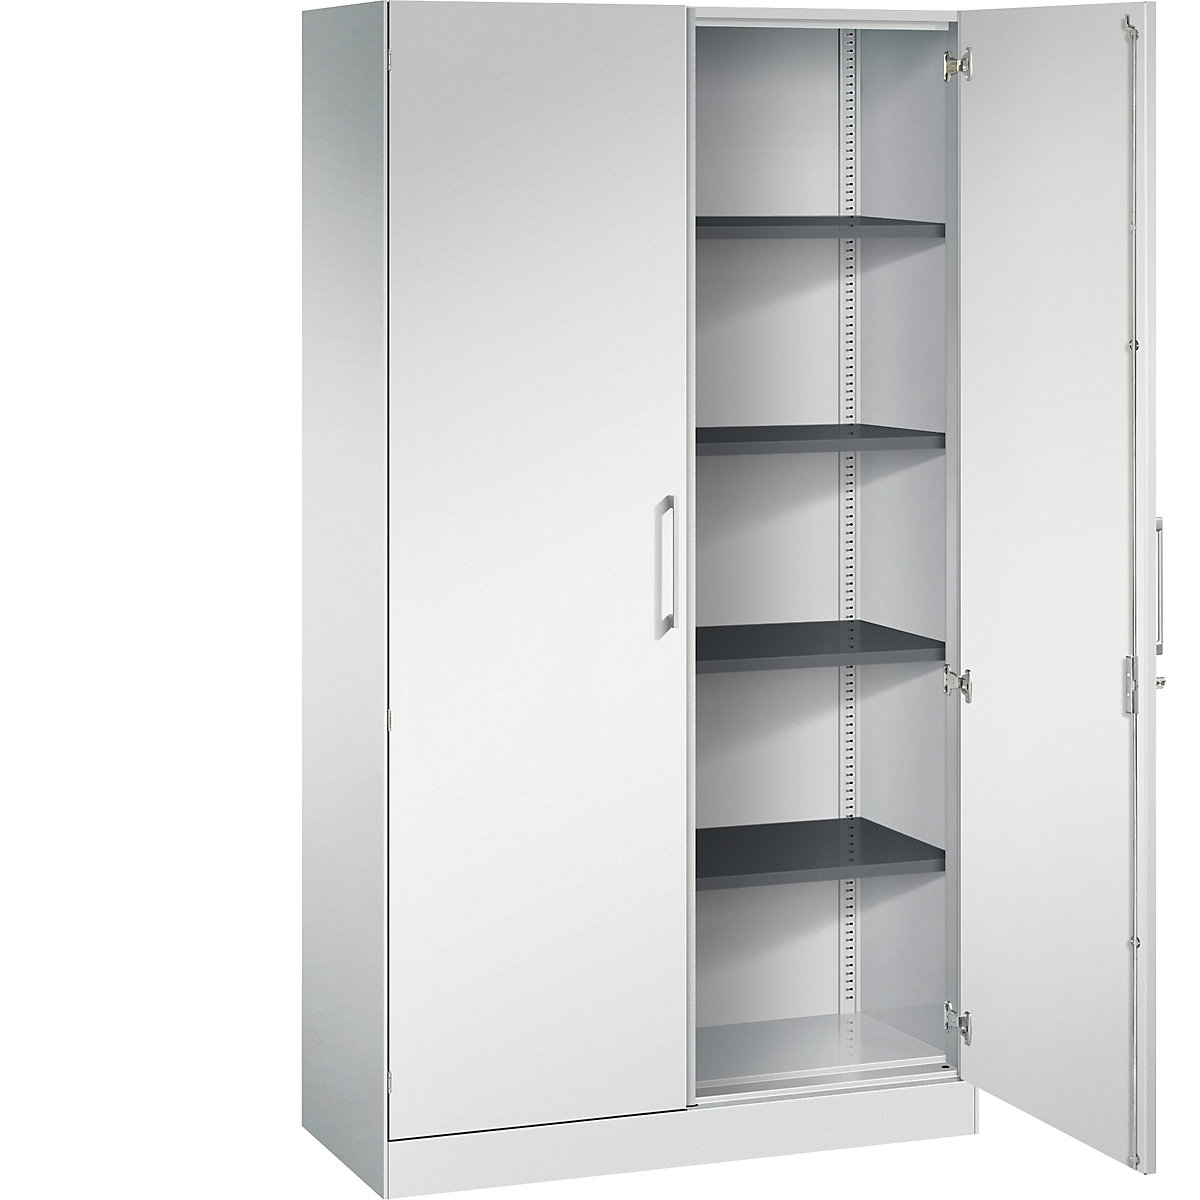 ASISTO double door cupboard, height 1980 mm – C+P, width 1000 mm, 4 shelves, light grey/light grey-3